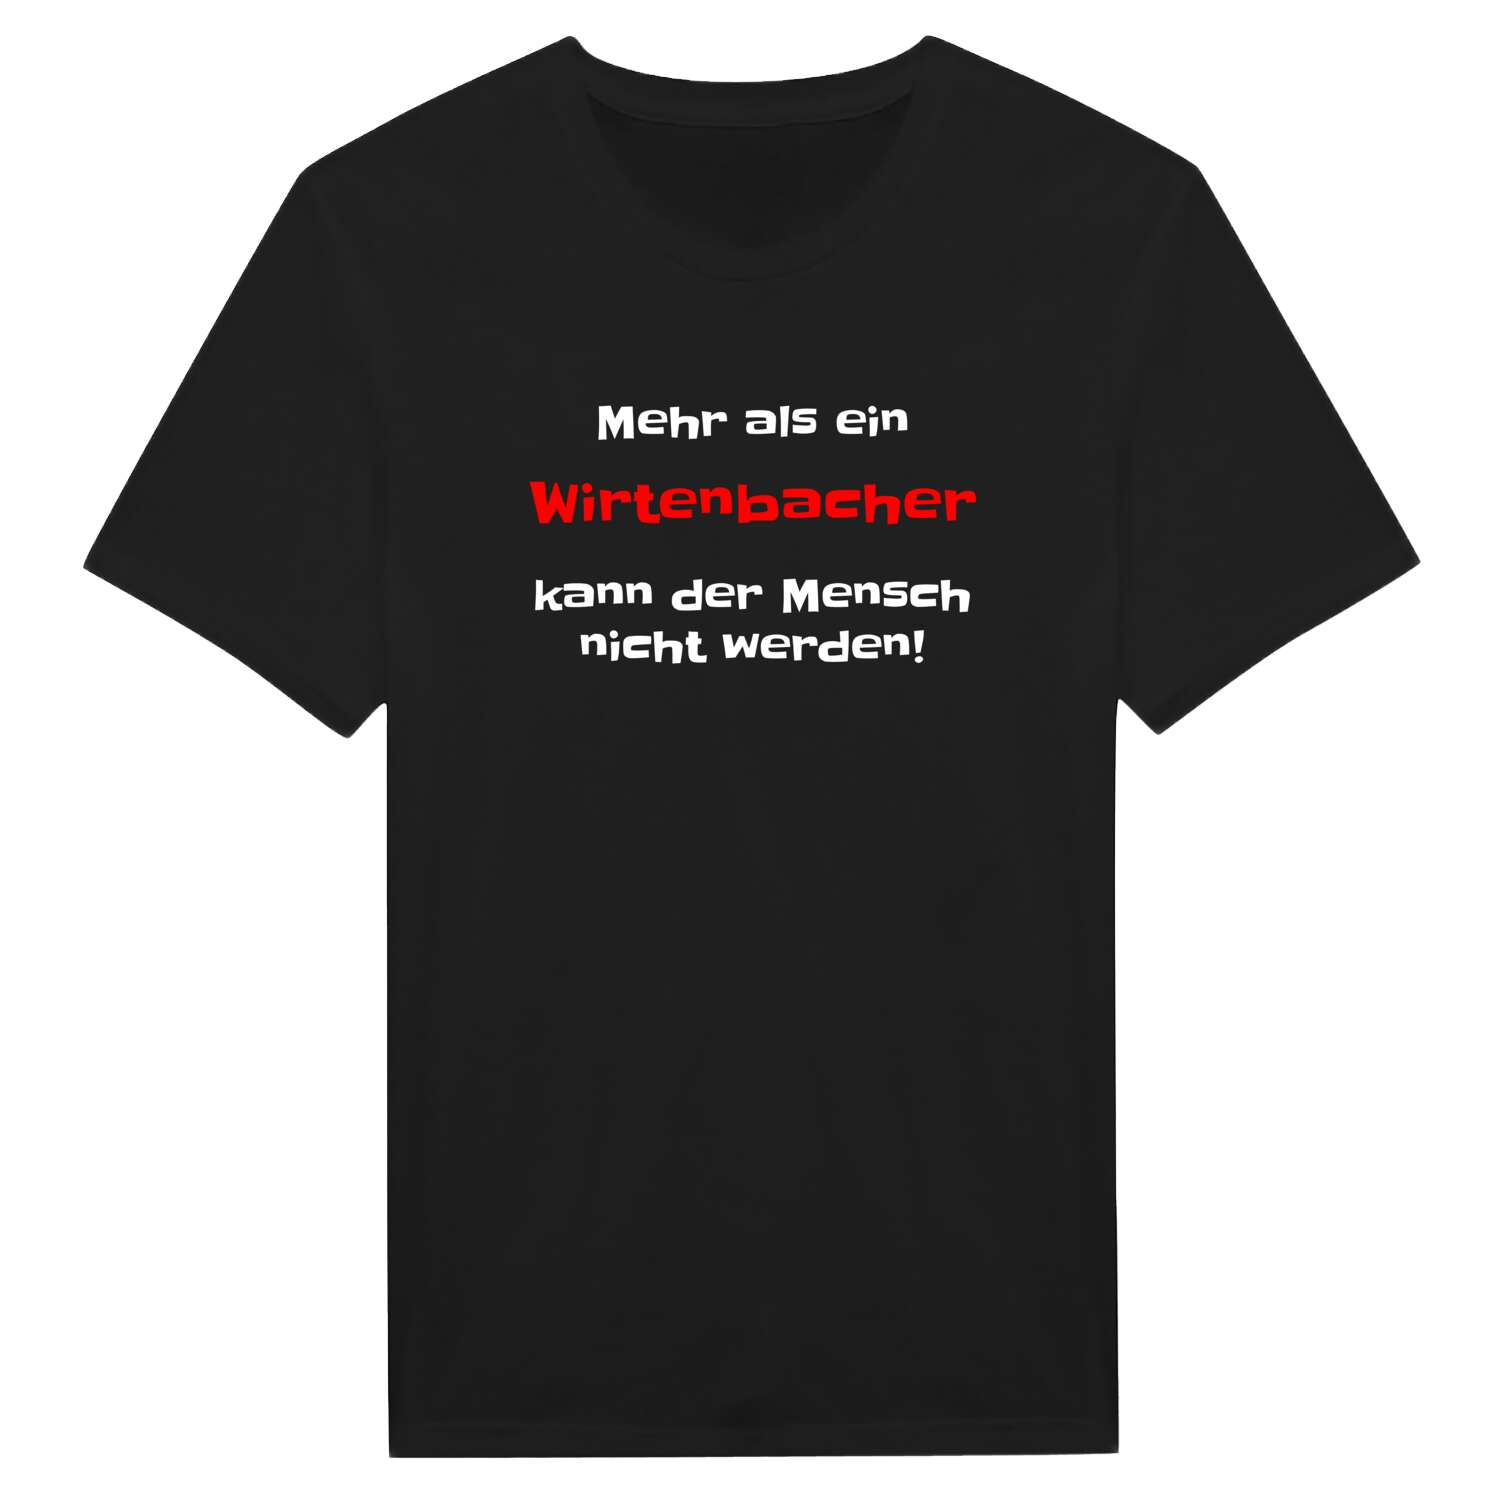 Wirtenbach T-Shirt »Mehr als ein«